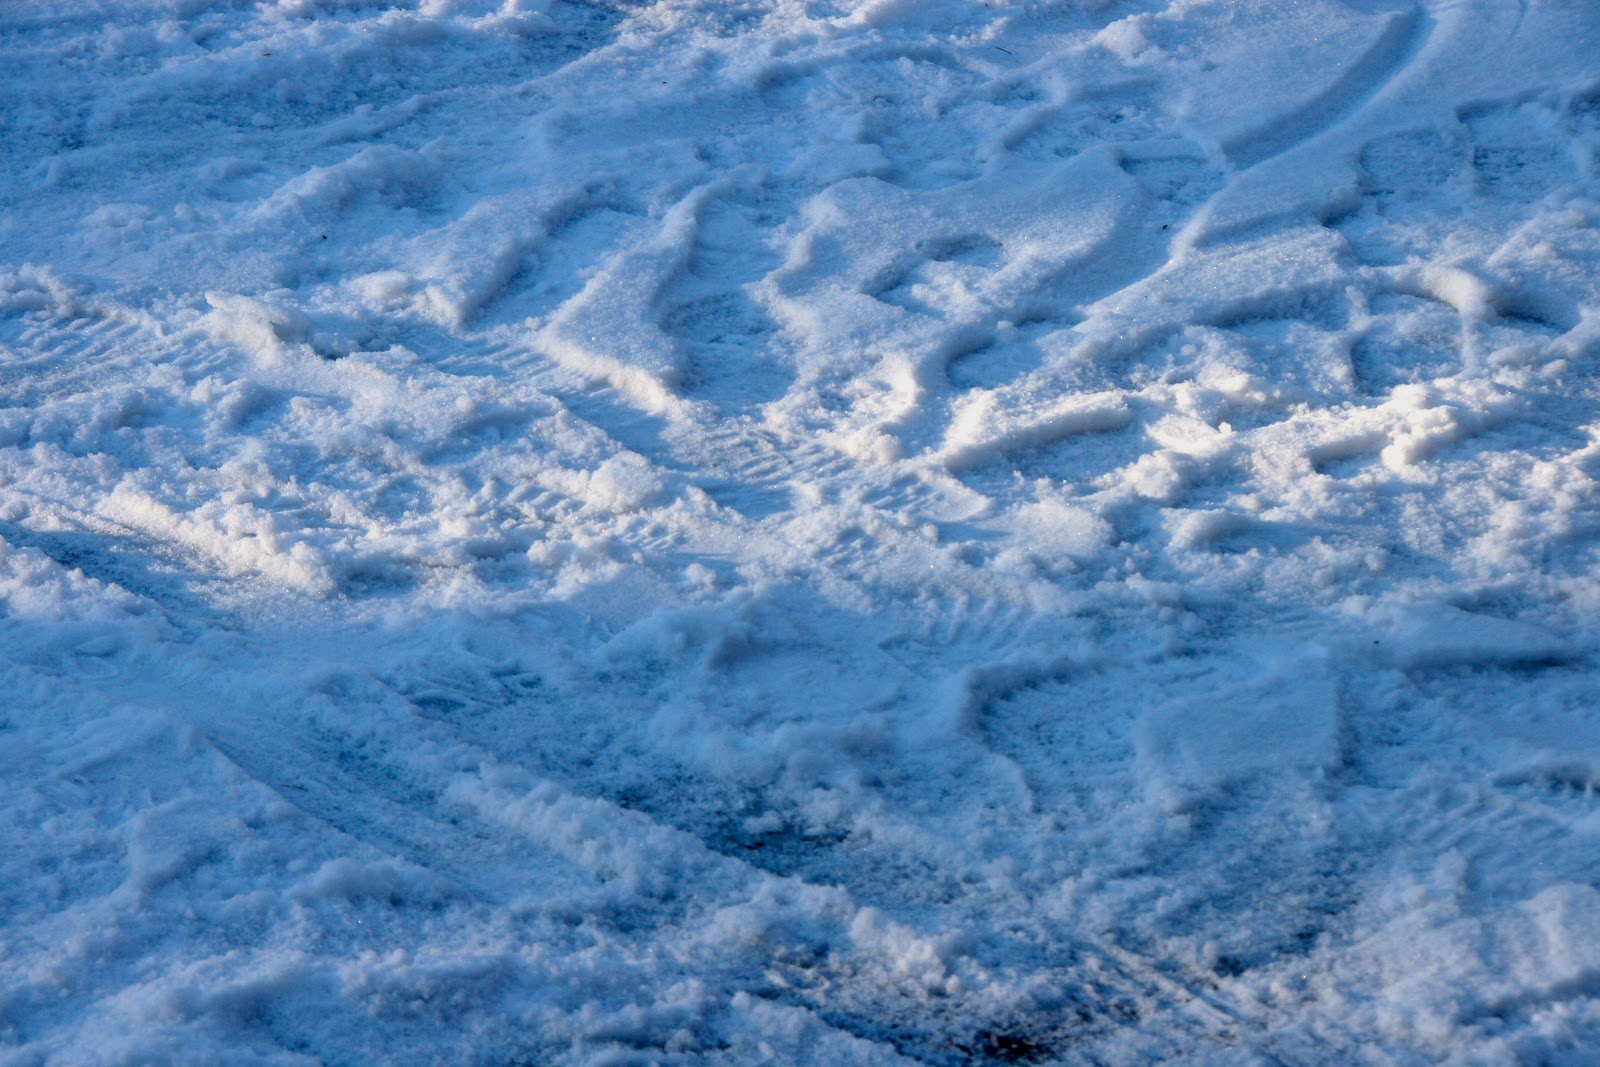 MotionsCafe fodspor i sne